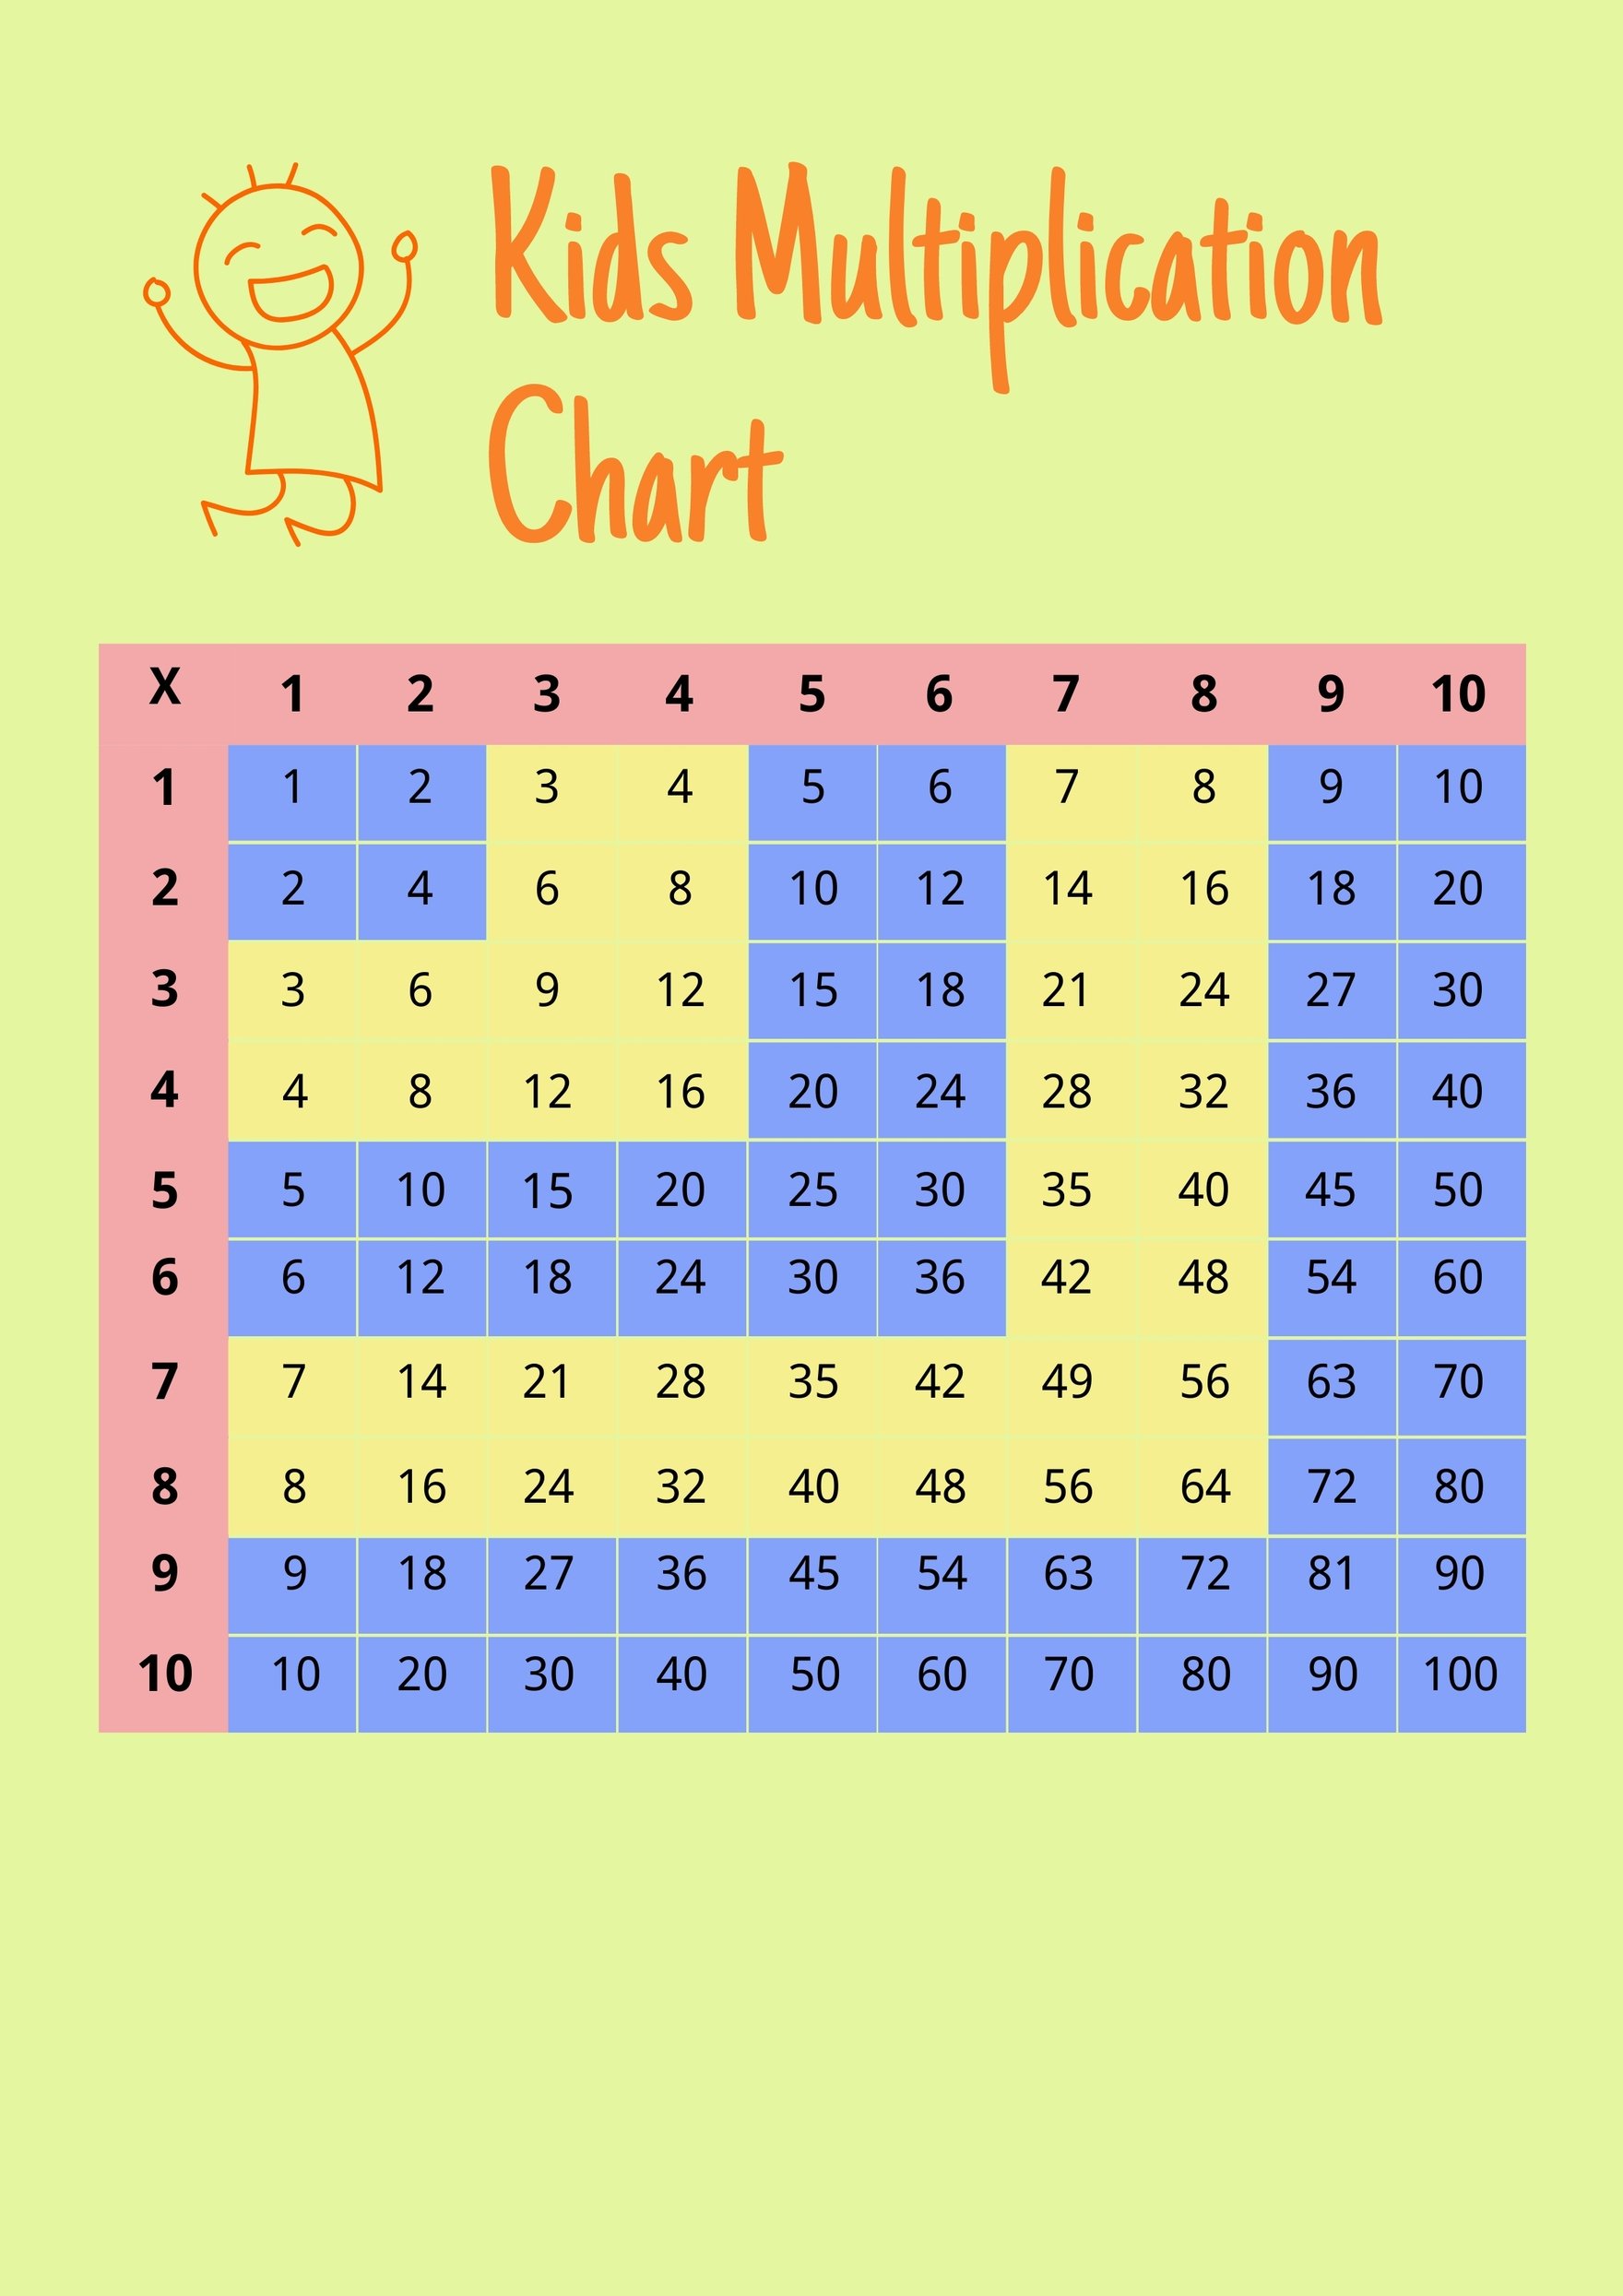 Kids Multiplication Chart Template